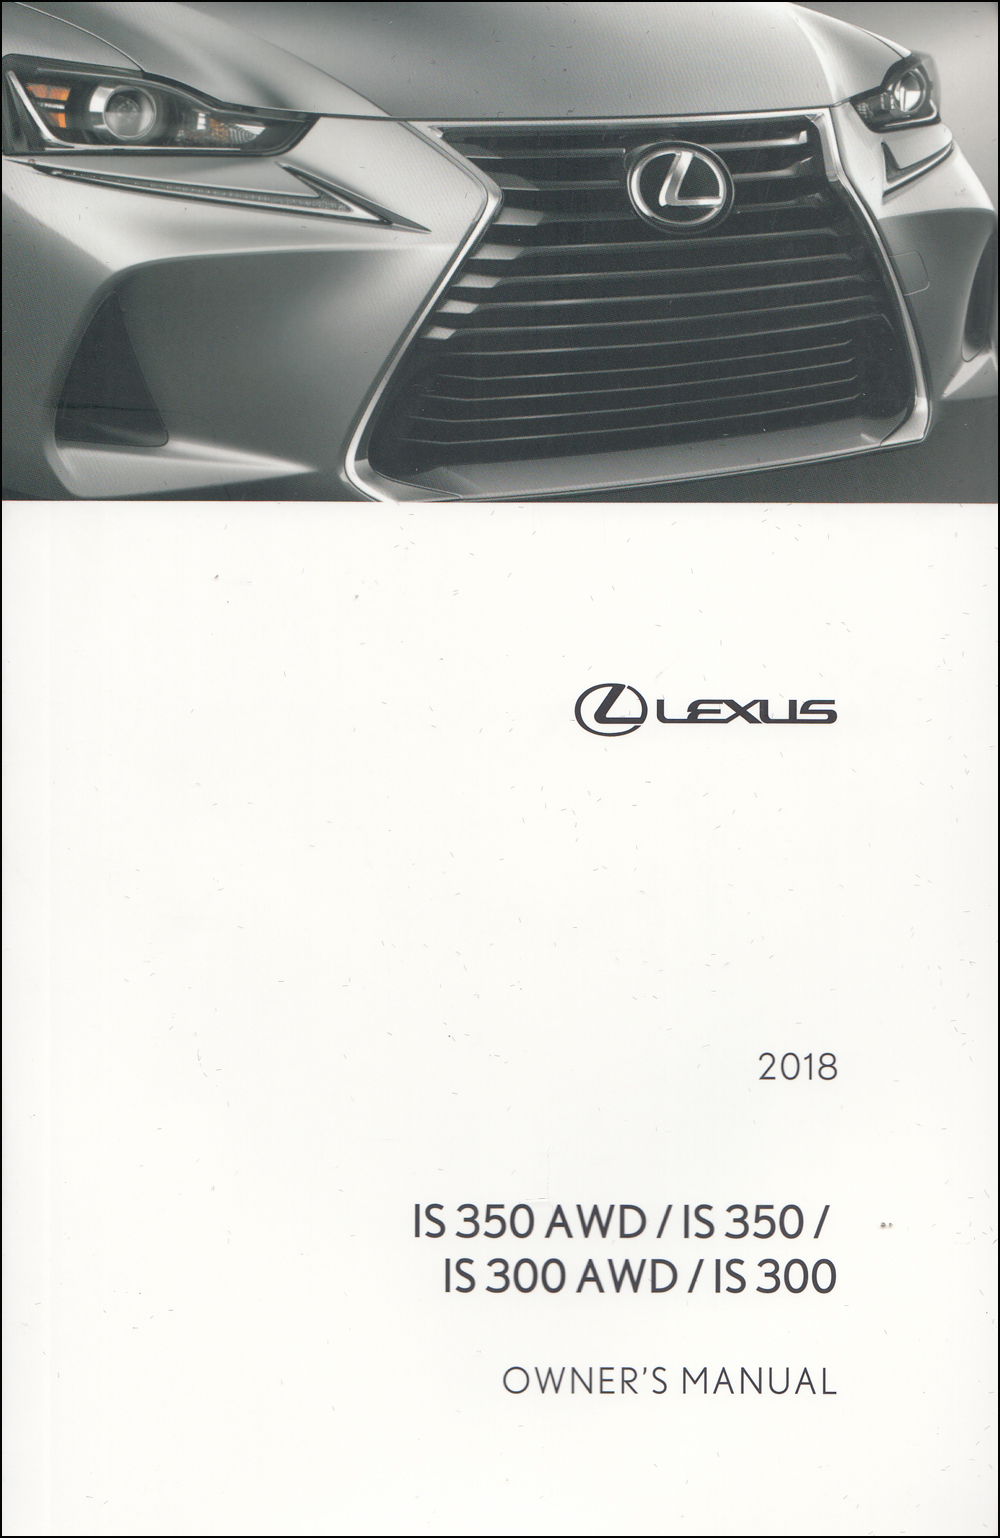 2018 Lexus IS 300 and IS 350 Sedan Owner's Manual Original